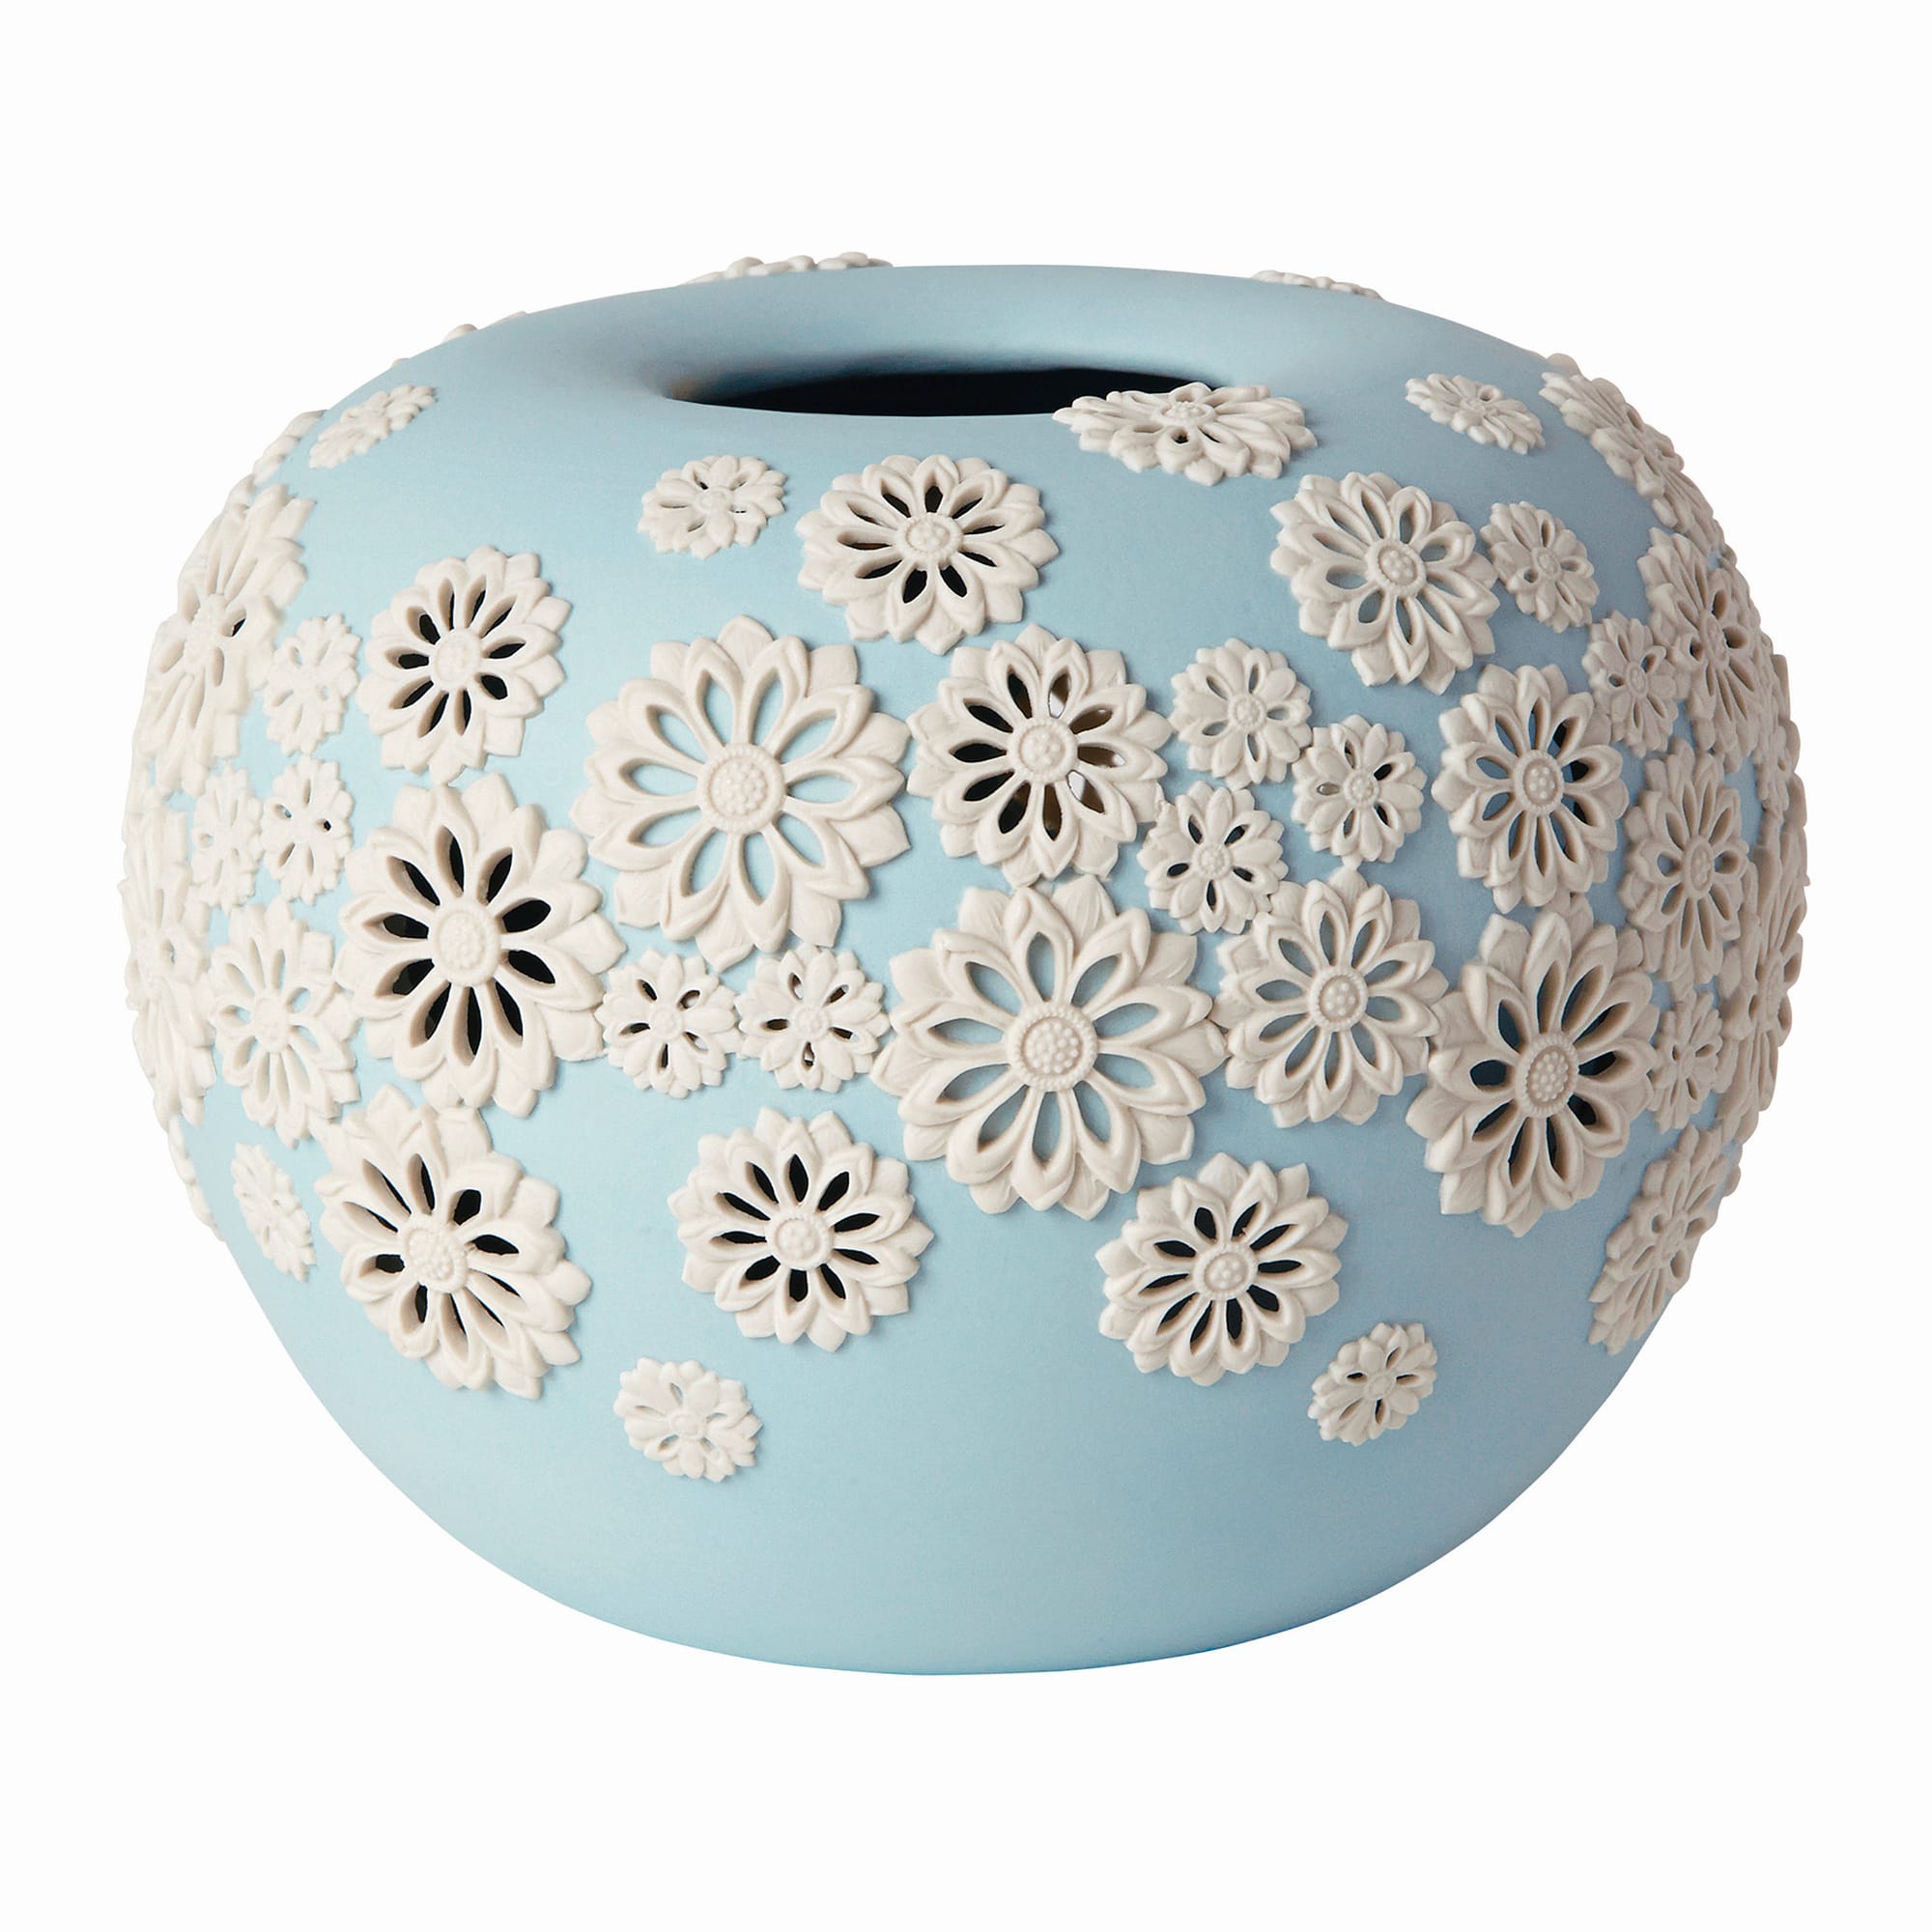 「Touka (透花) Vase」は、ぼんぼりのような丸いベースに透かし彫りの菊が舞う。